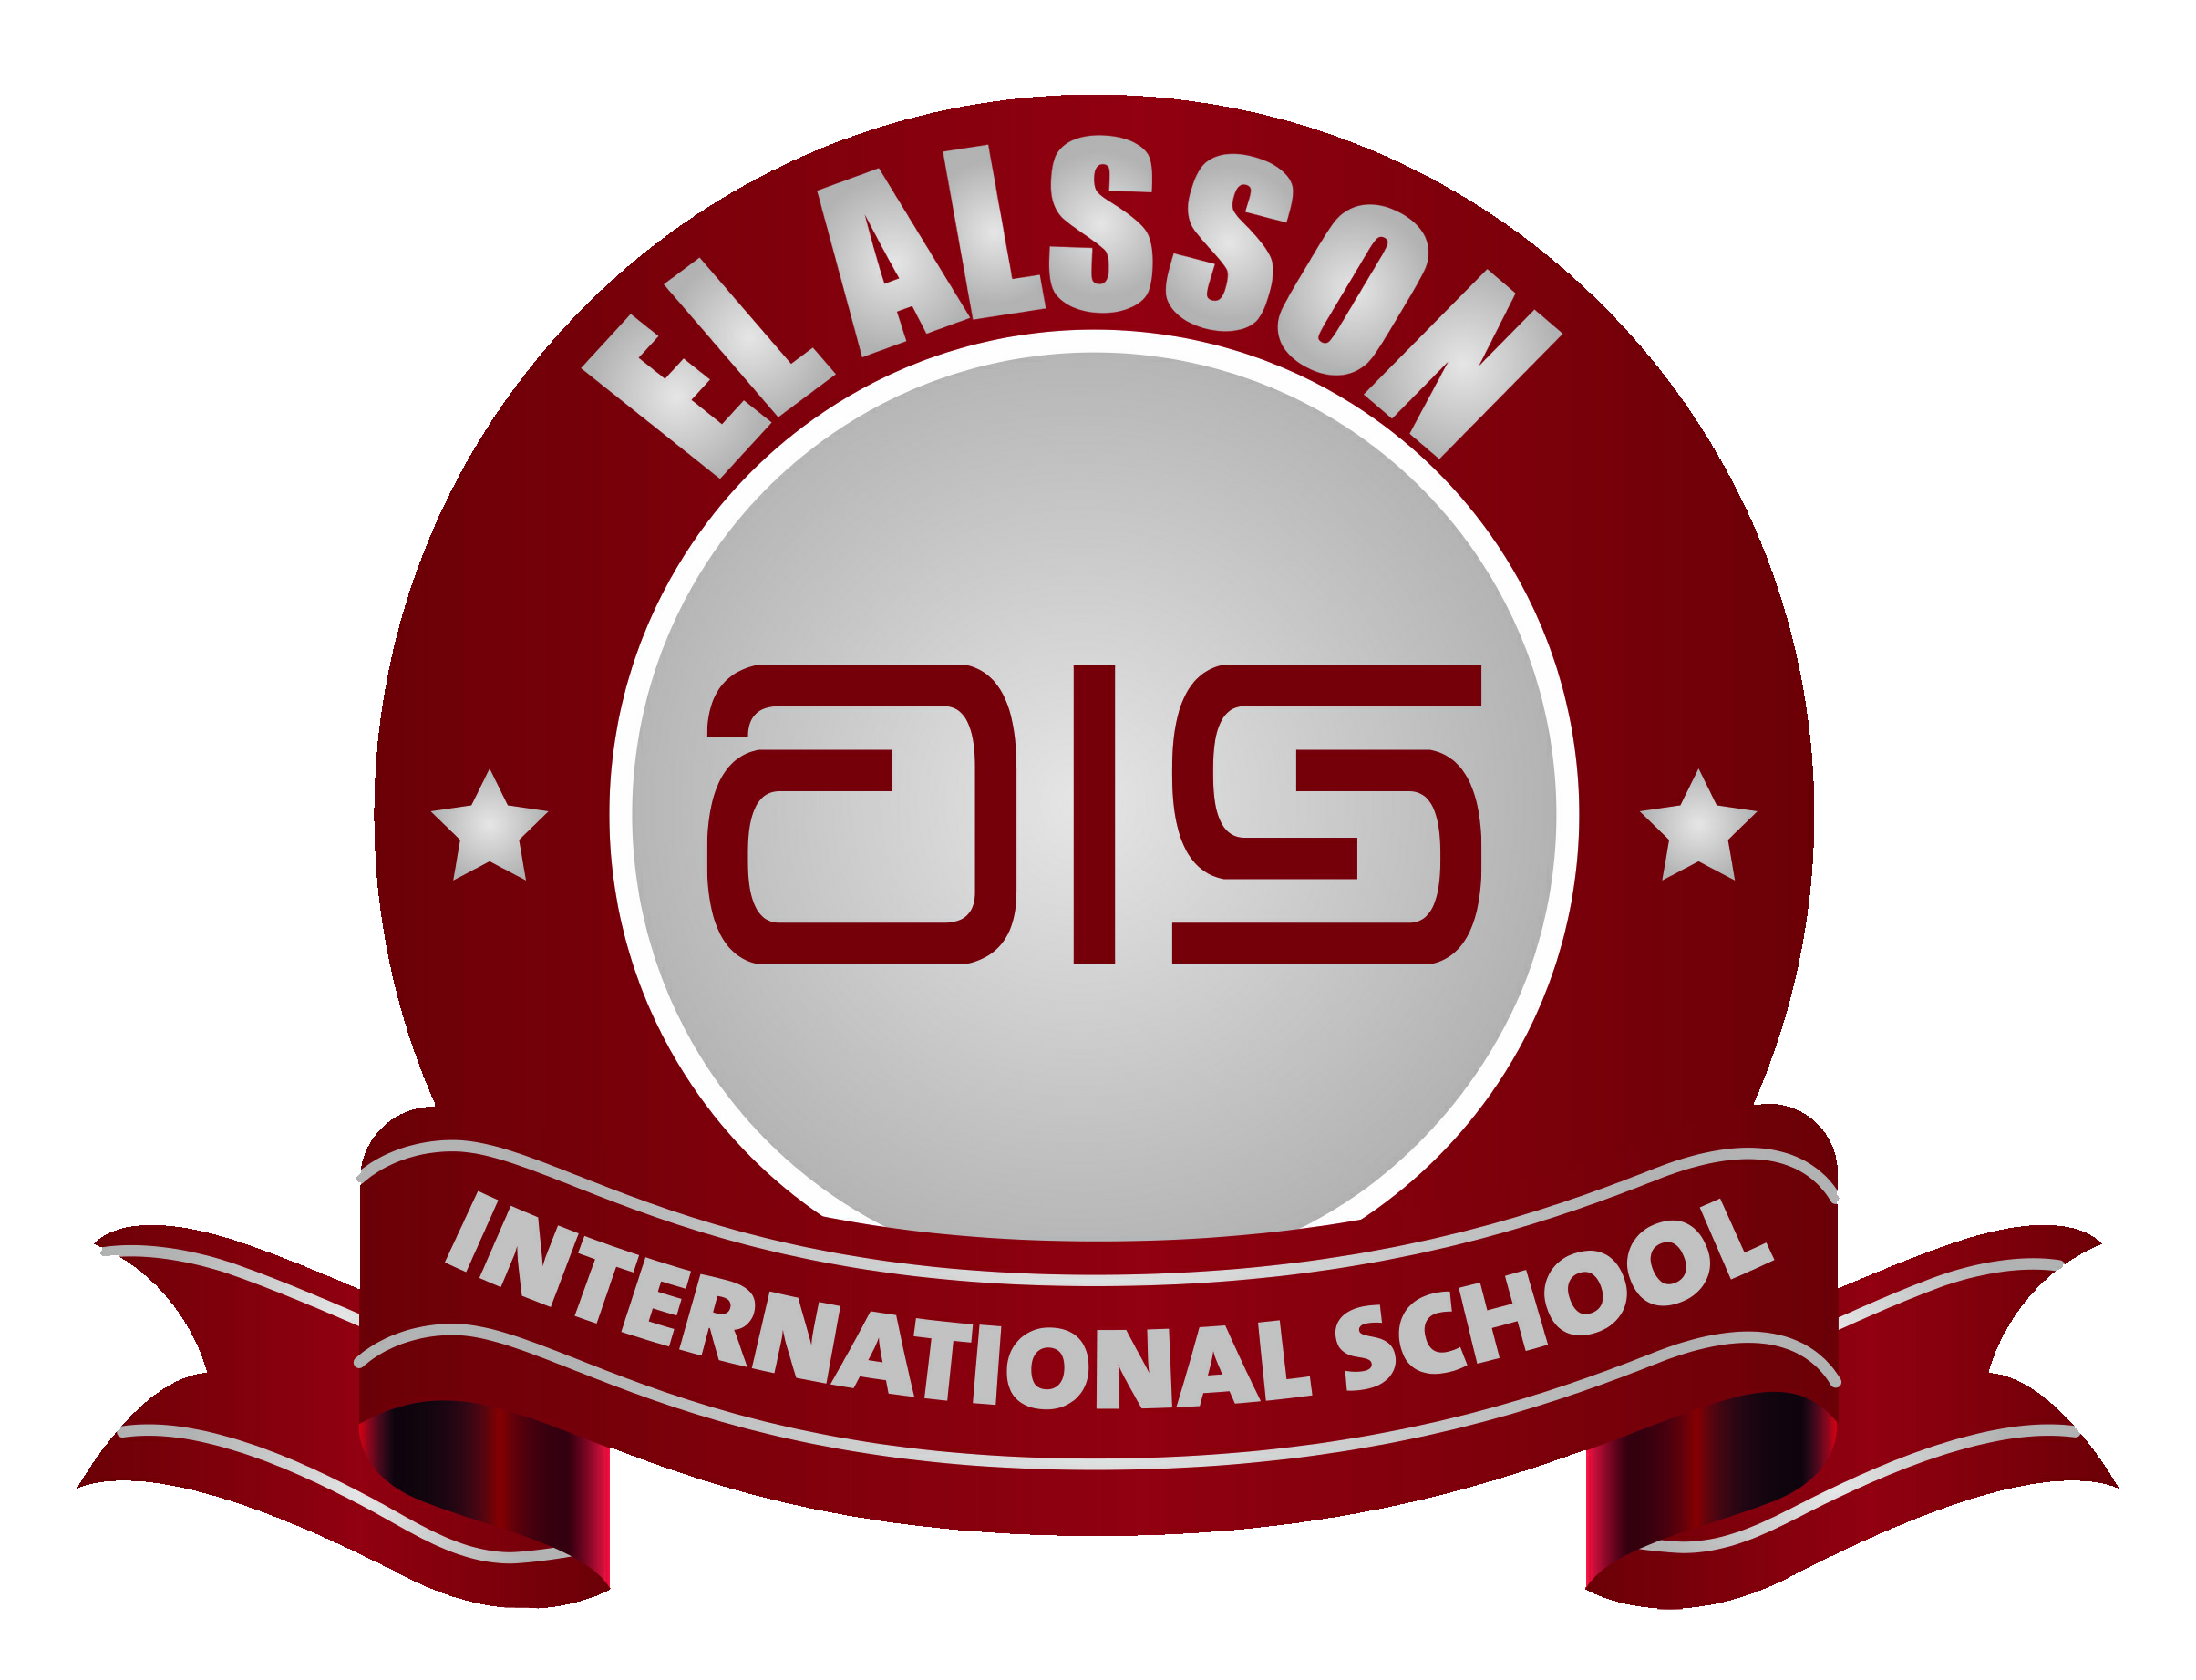 School Calendar El Alsson School